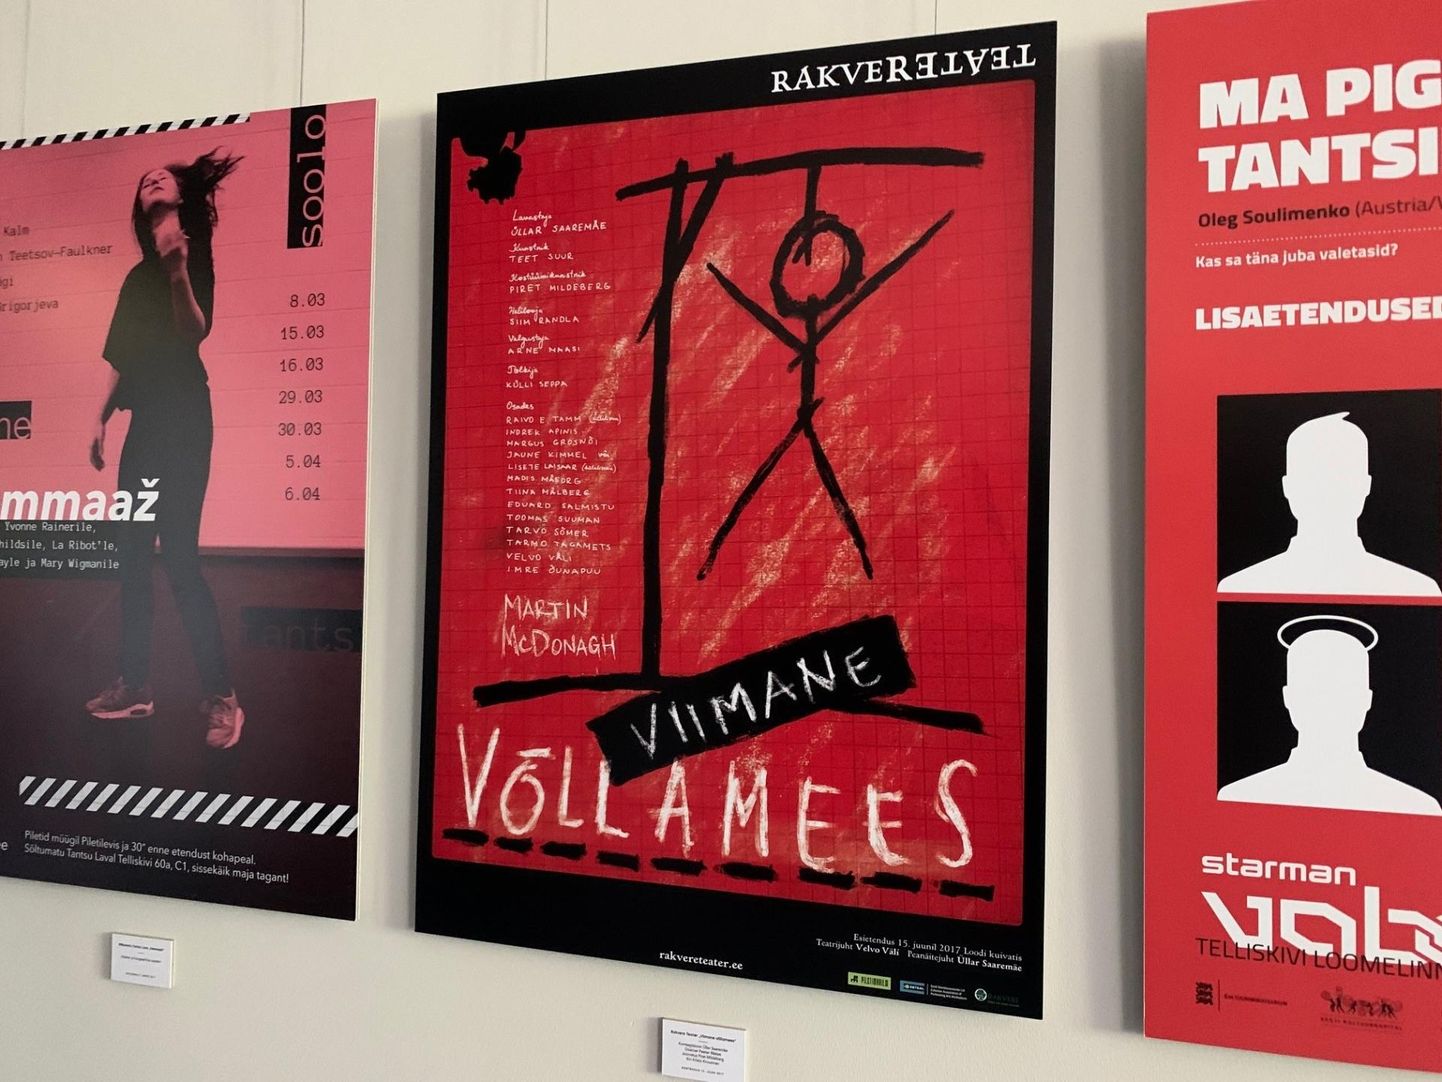 Rakvere teatrit esindab näitusel Üllar Saaremäe lavastuse "Viimane võllamees" (kunstnik Teet Suur) plakat.